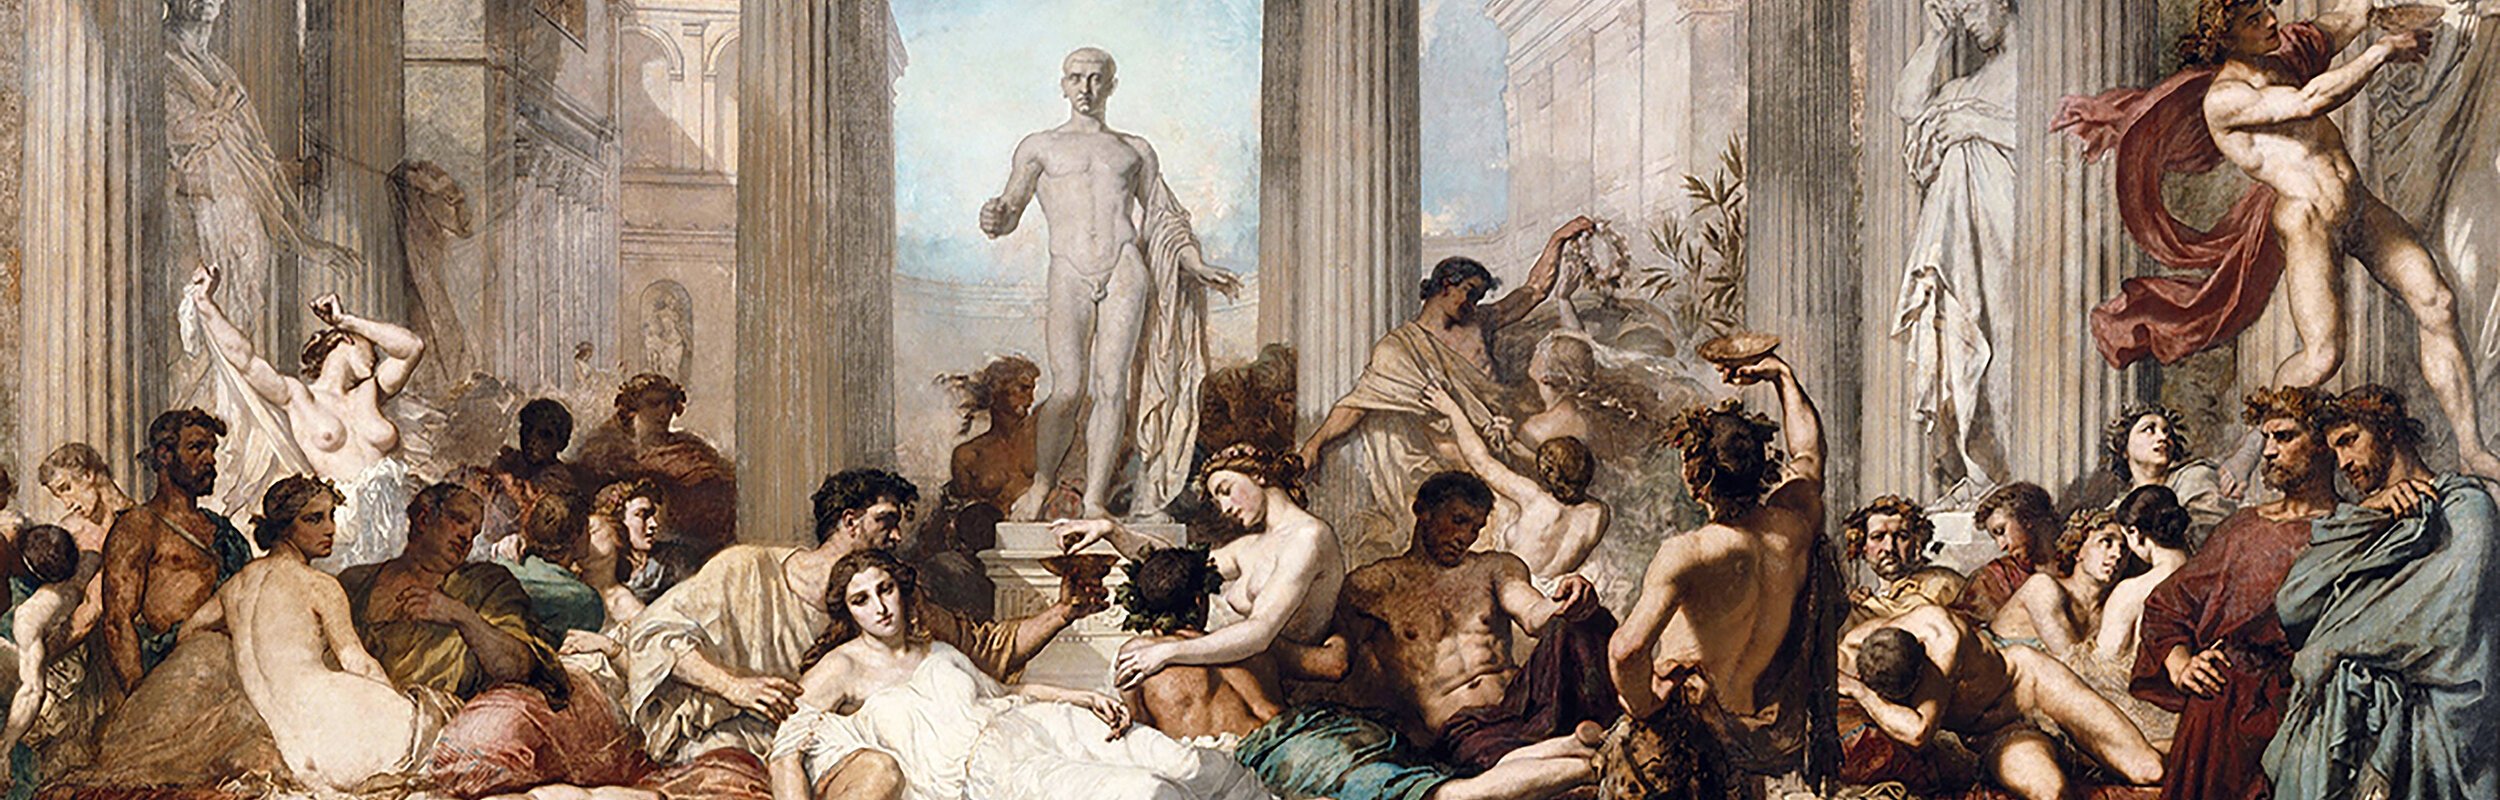 Thomas Couture: »Les Romains de la décadence« (1847), Paris, Musée d’Orsay, Inv.-Nr. 3451